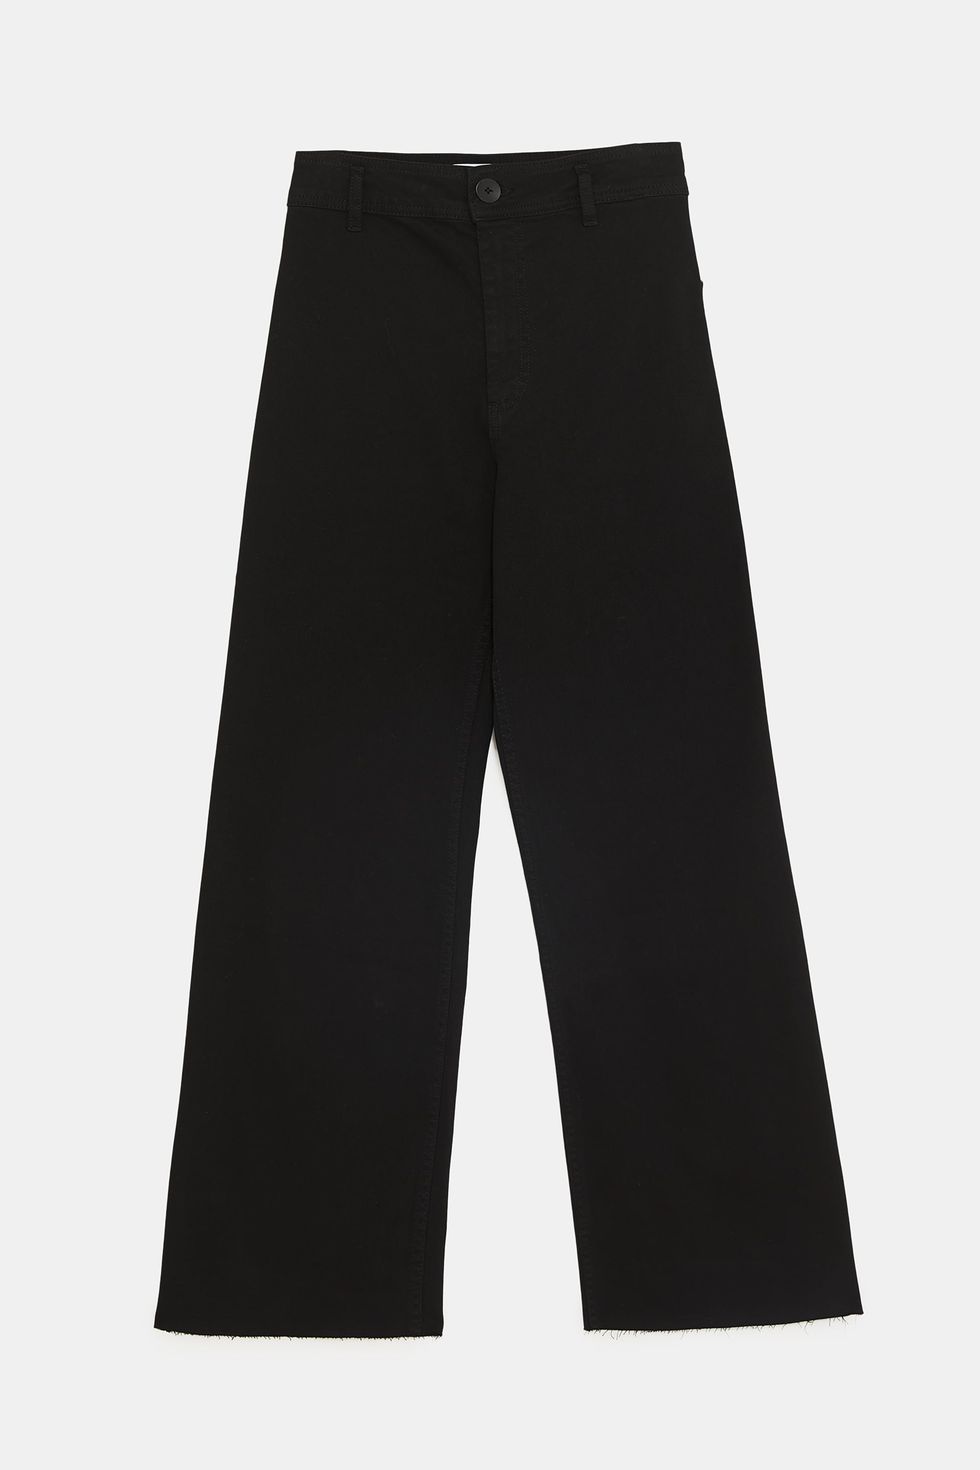 Fotos: Estos son los pantalones negros que te harán tipazo y te